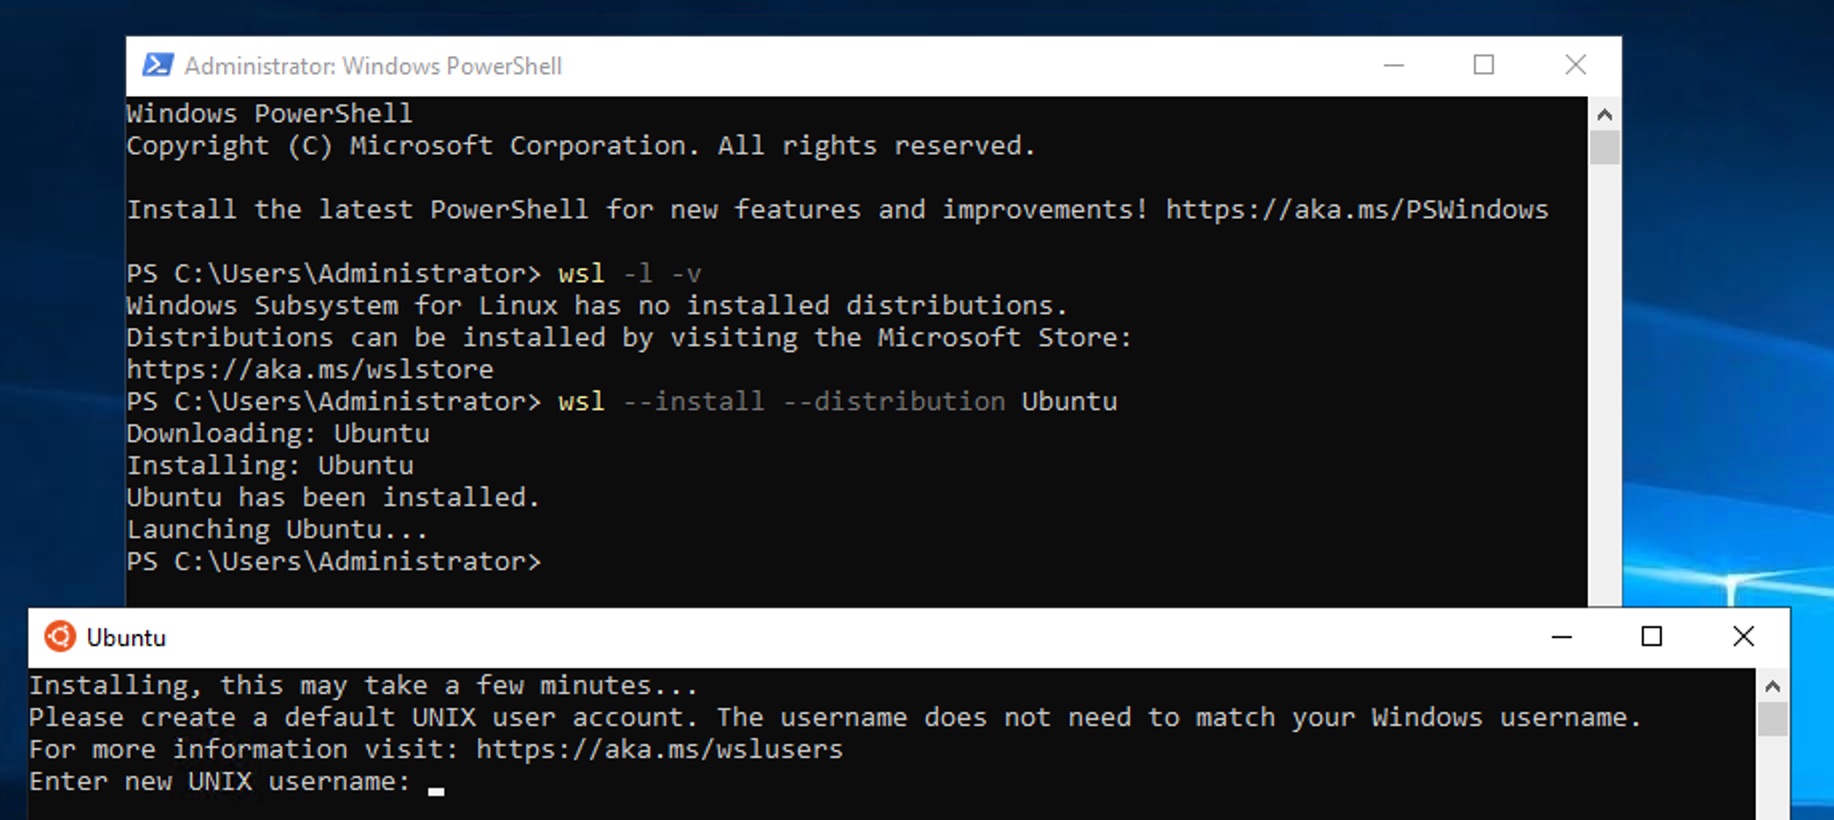 インストールが完了すると、Ubuntuのウィンドウが起動し、ユーザー名の入力が求められる